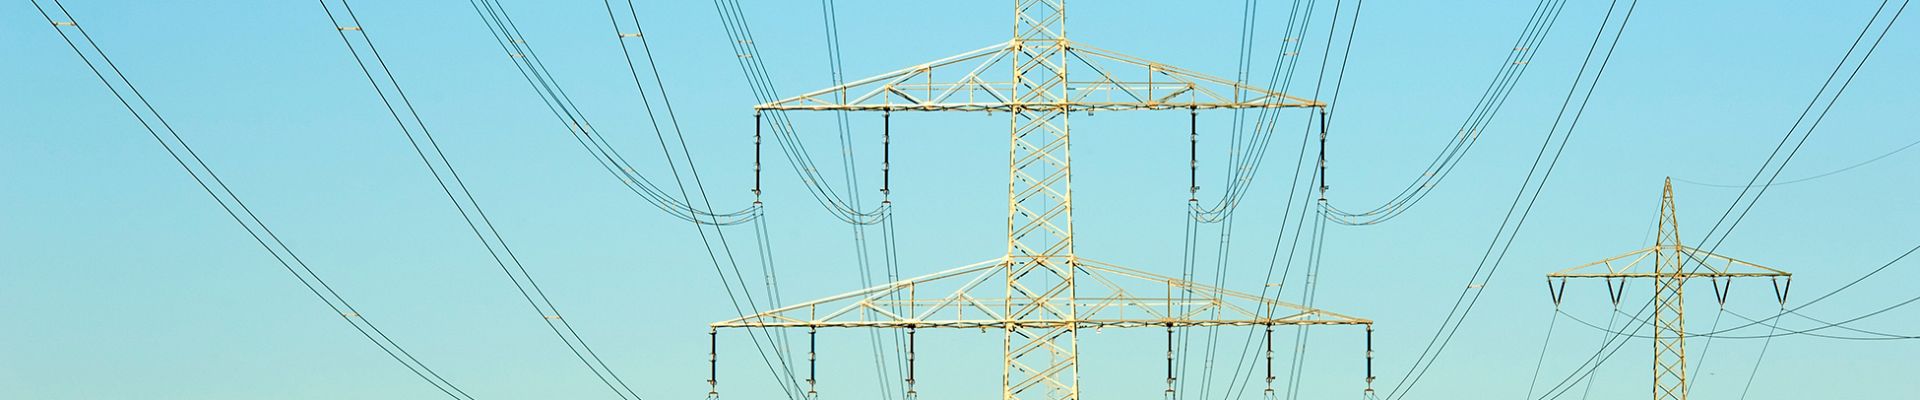 Stromleitungen - Sicherer Netzbetrieb mit FuturePowerFlow.